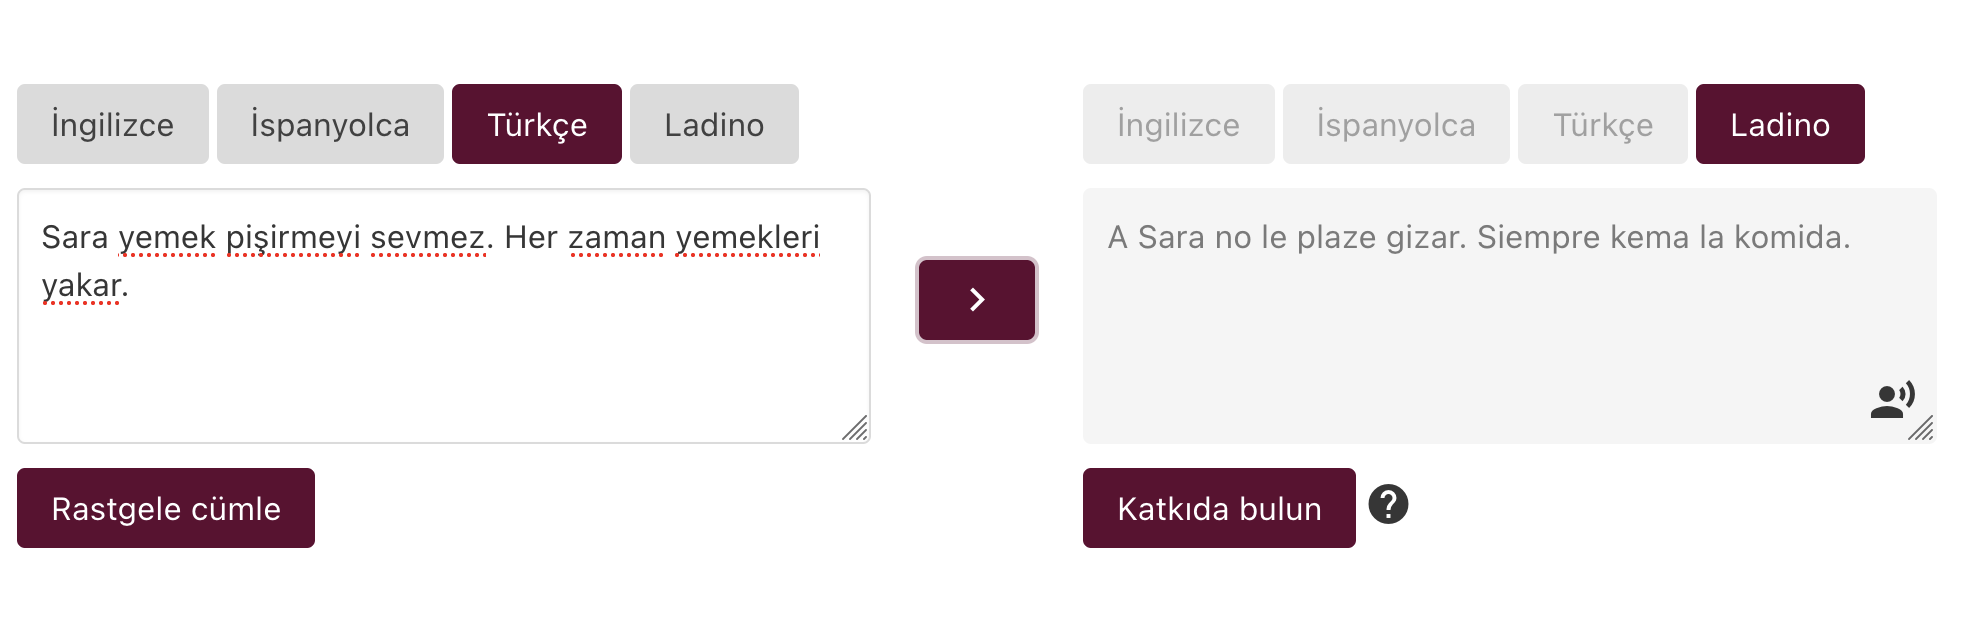 Ladino translation web app with speech synthesis translating the sentence "Sara yemek pişirmeyi sevmez. Her zaman yemekleri yakar." to "A Sara no le plaze gizar. Siempre kema la komida."